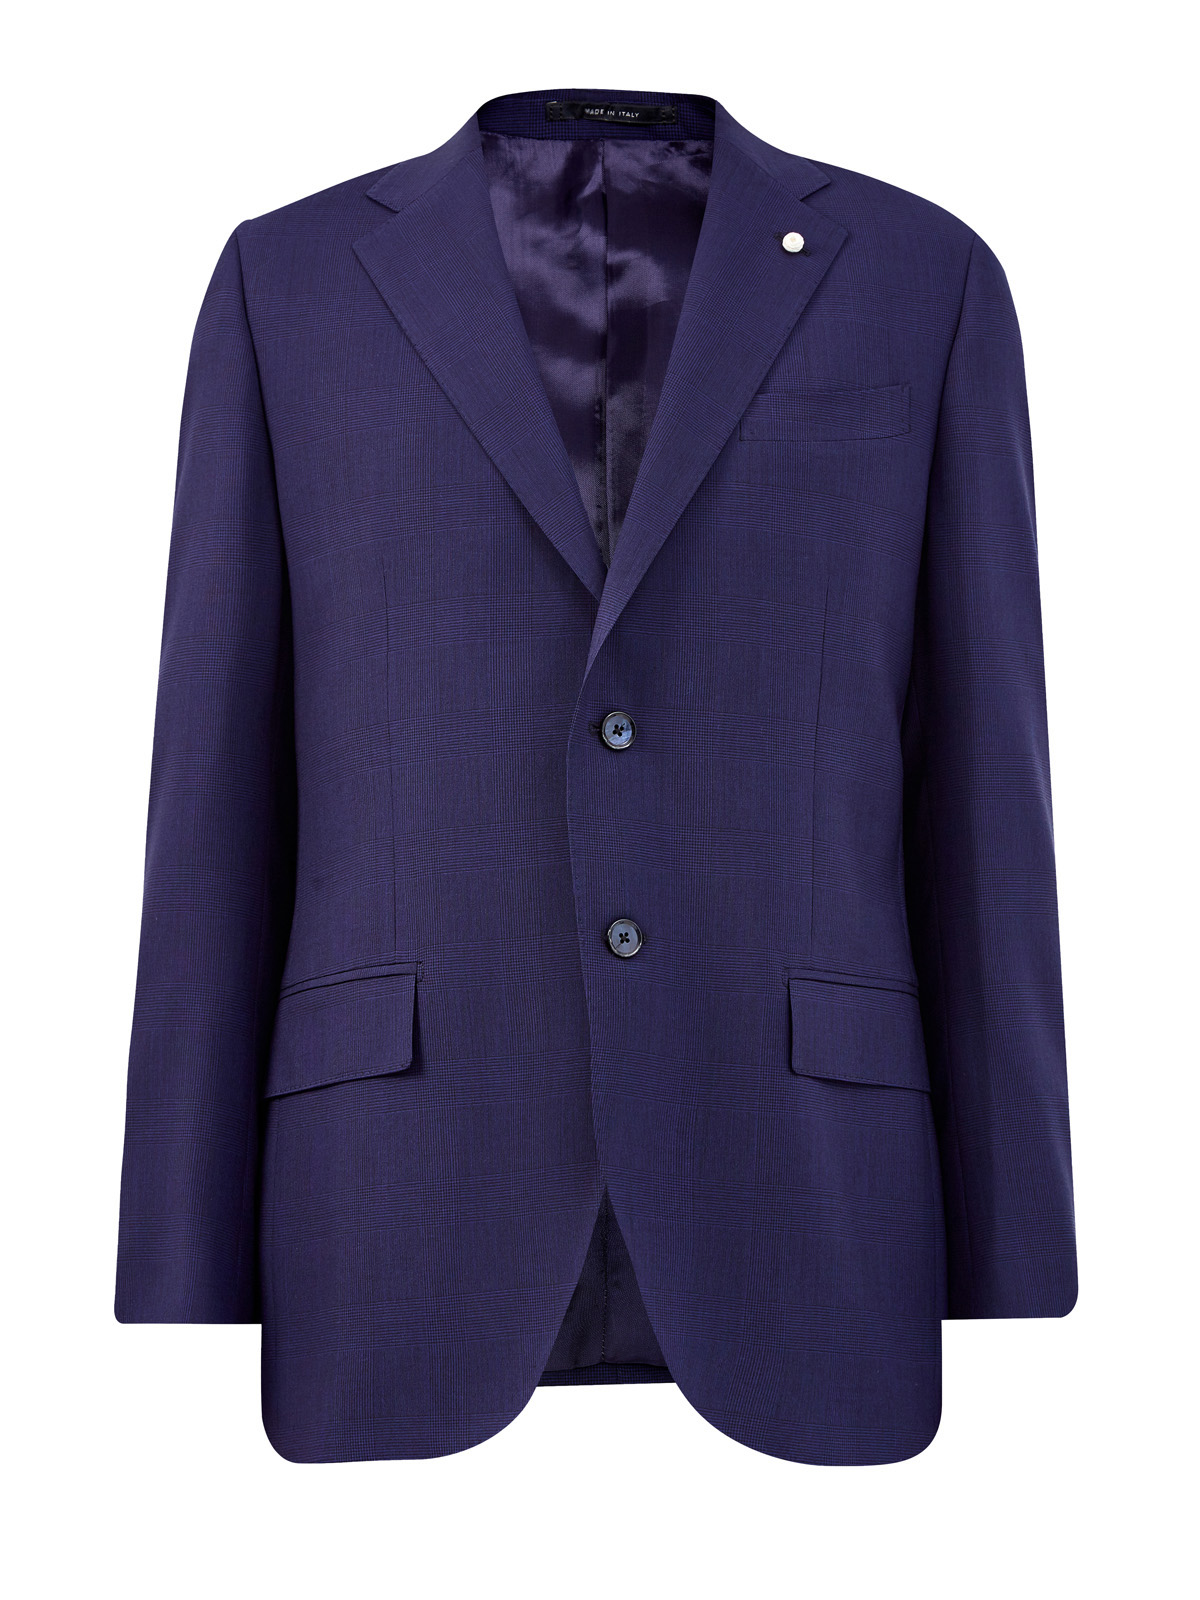 Пиджак из шерстяной ткани Bi-Stretch с мелованным принтом L.B.M. 1911, цвет синий, размер 52;54;56;58;60